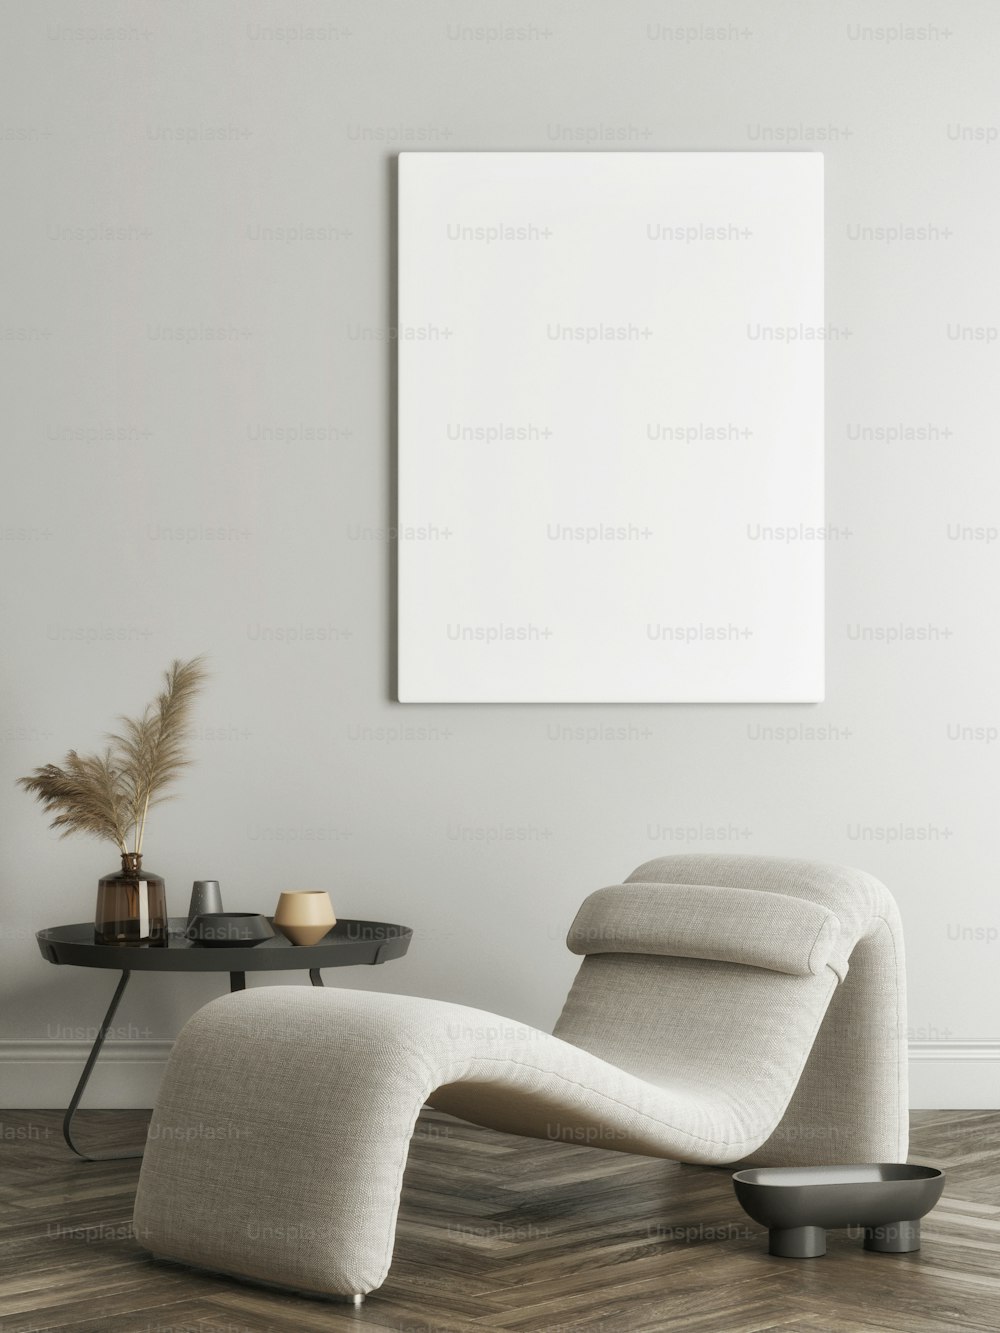 Leeres Poster im Wohnzimmer mit bequemen Möbeln und Wohndekoration, 3D-Rendering, 3D-Illustration.